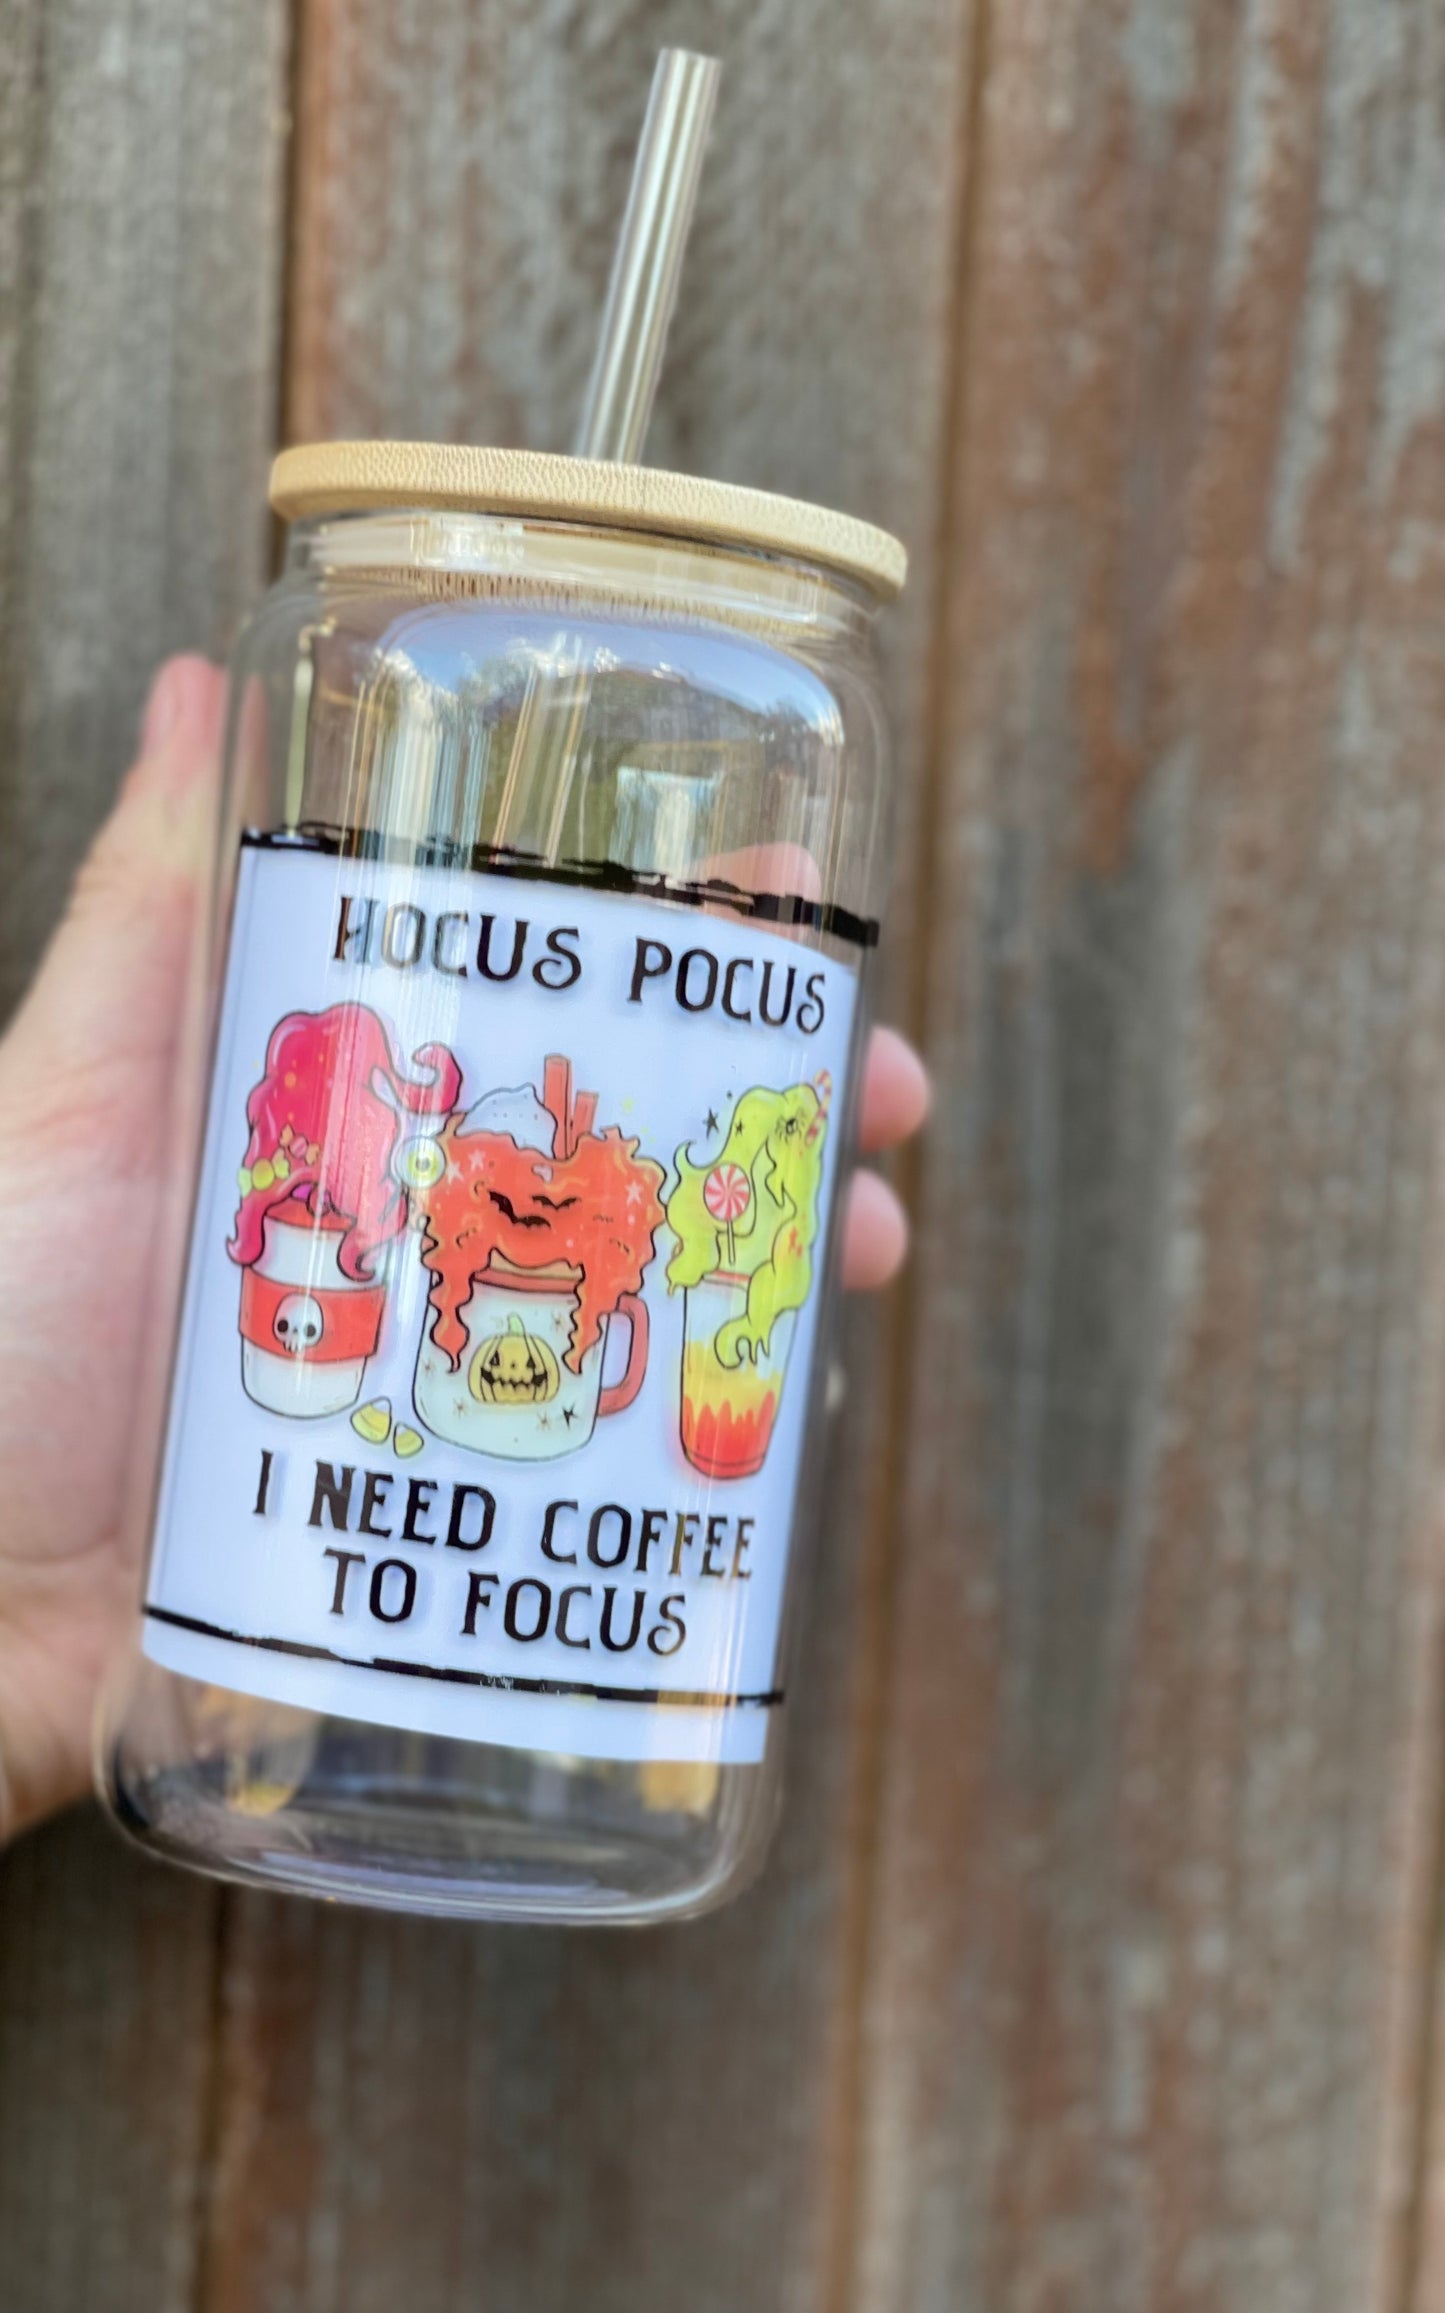 Hocus Pocus Glass Cup